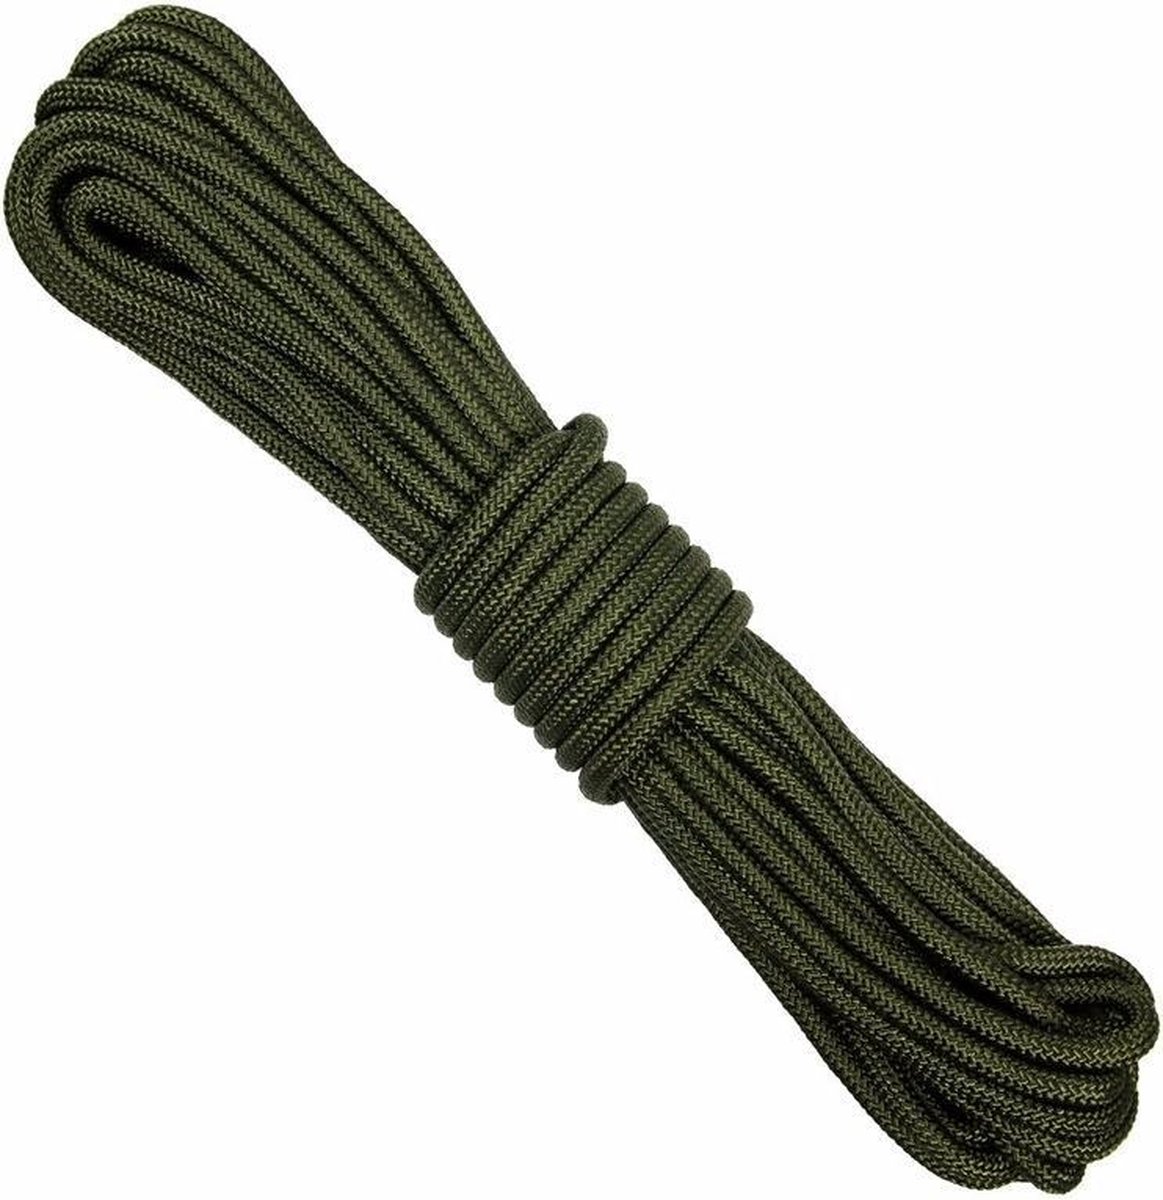 Stevig outdoor touw/koord 7 mm 15 meter - Merkloos